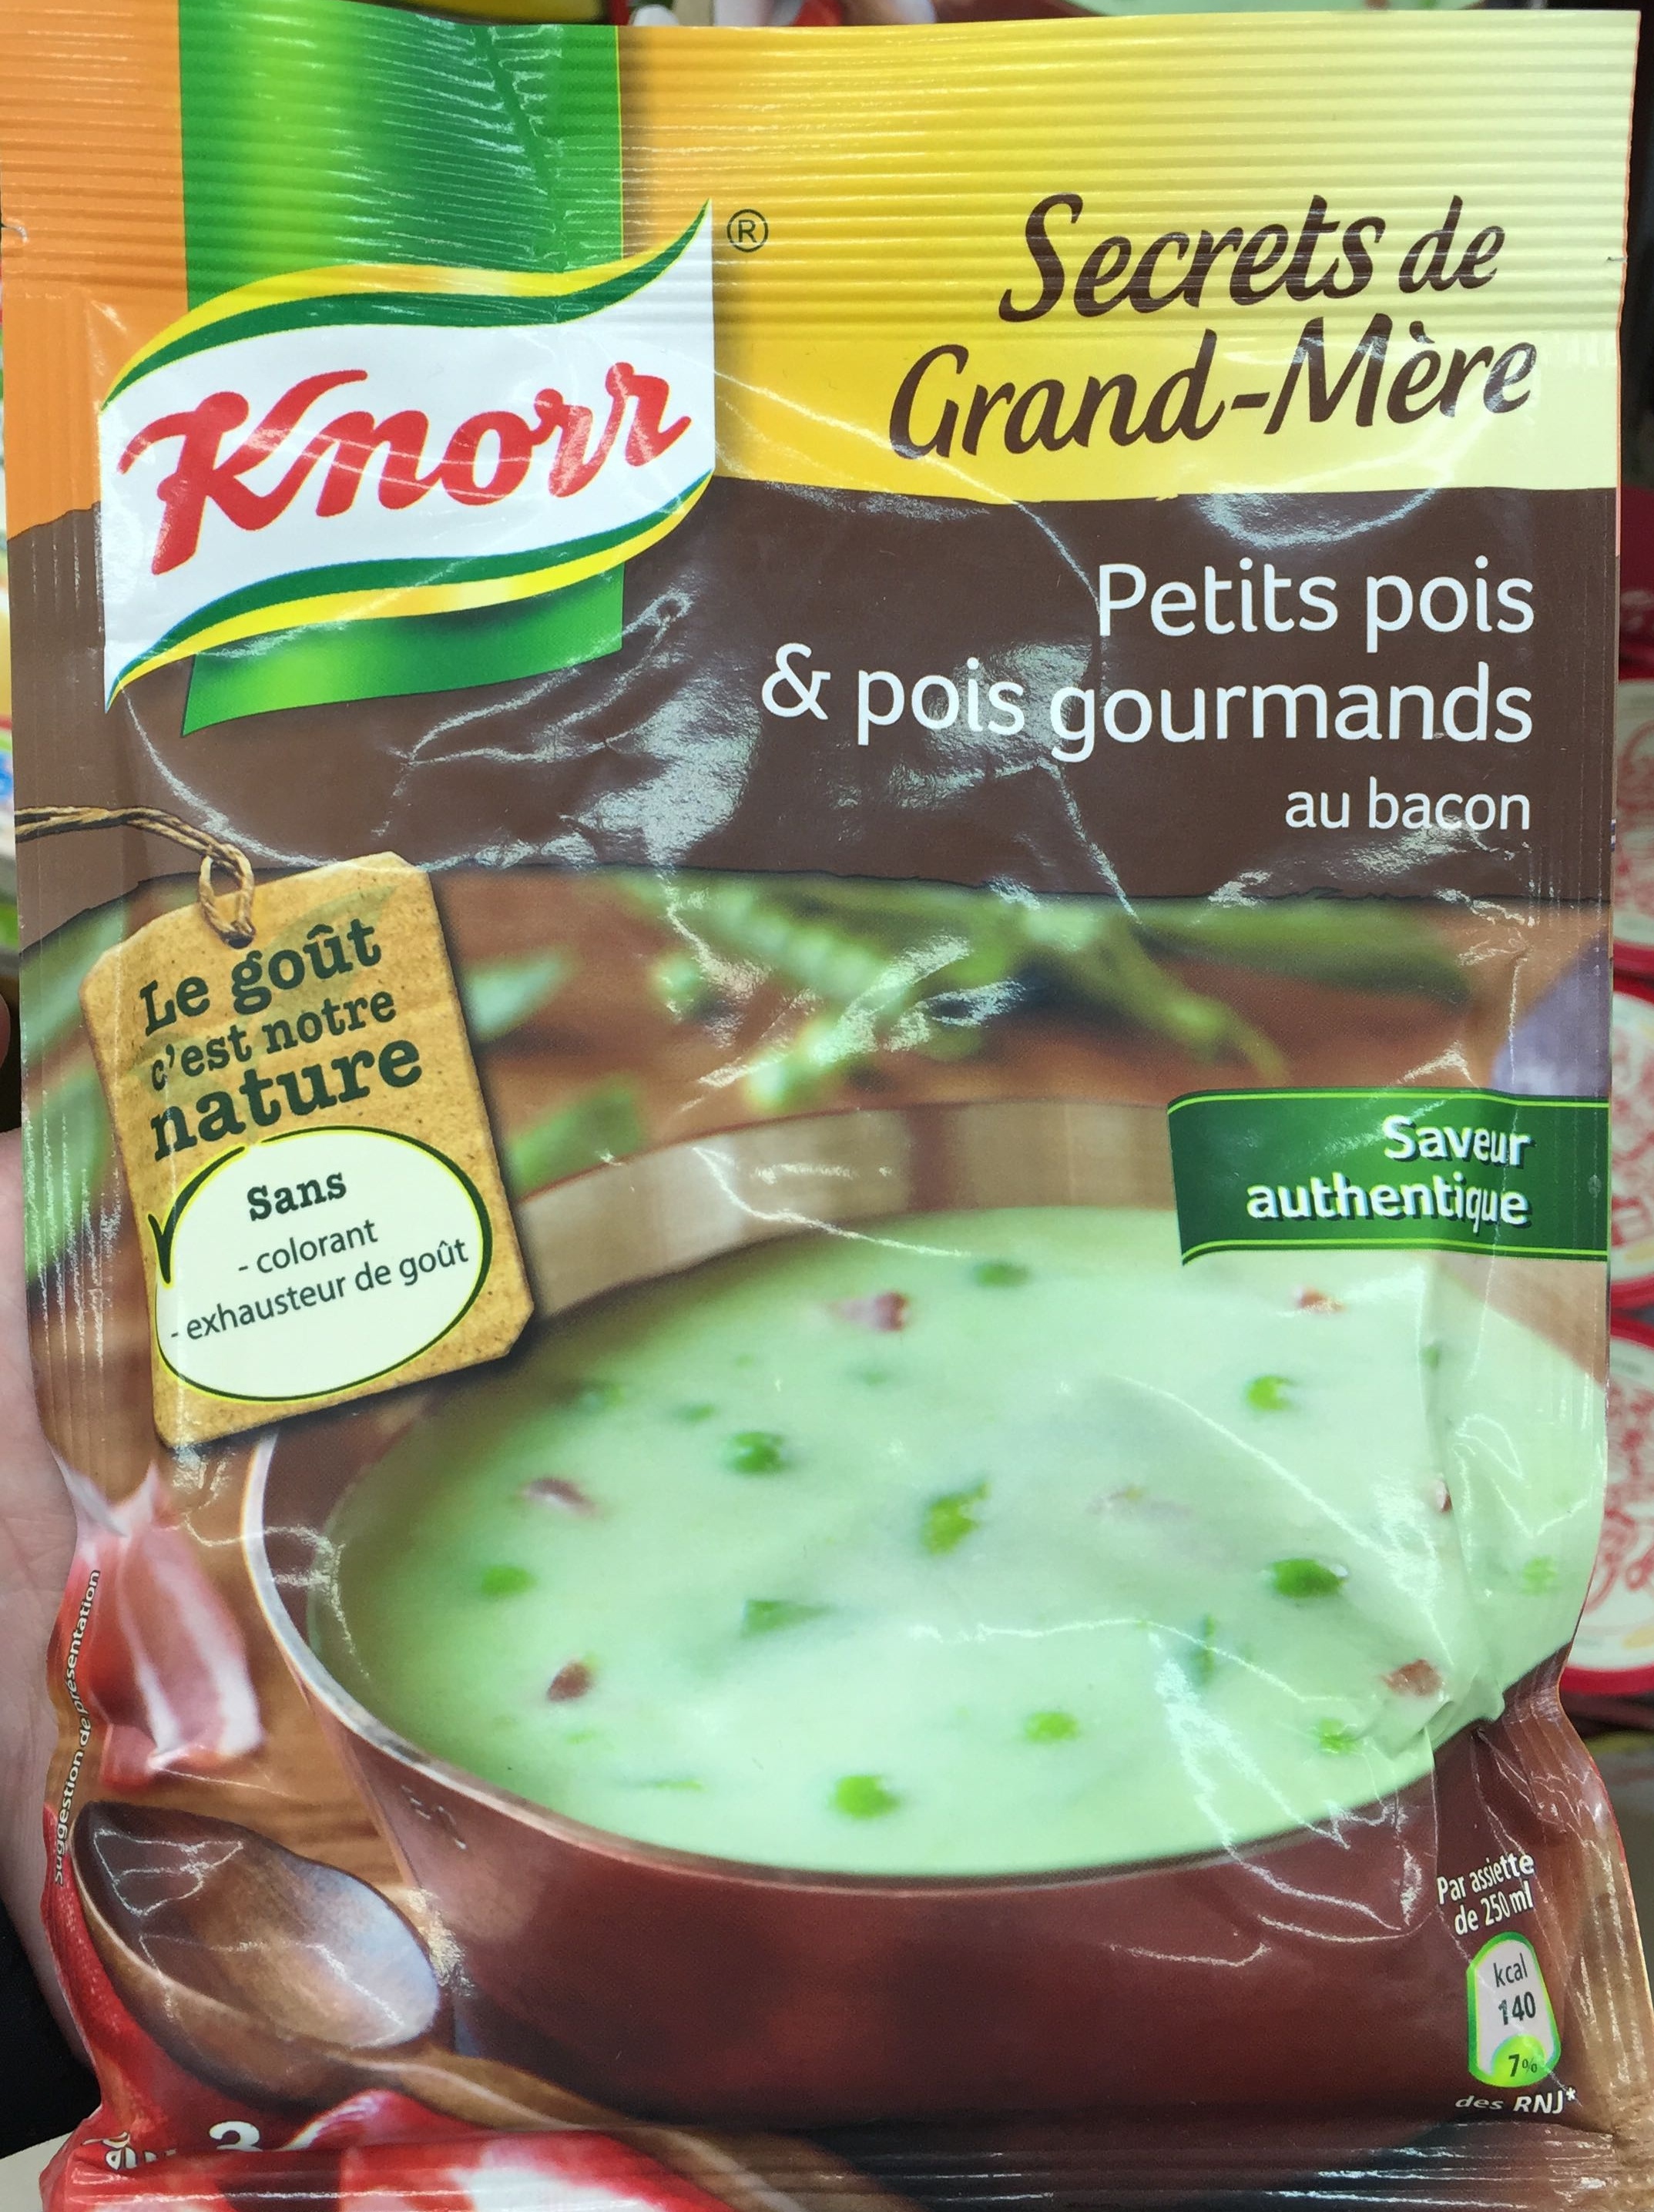 Secrets de Grand-Mère Petits pois & pois gourmands au bacon - Product - fr